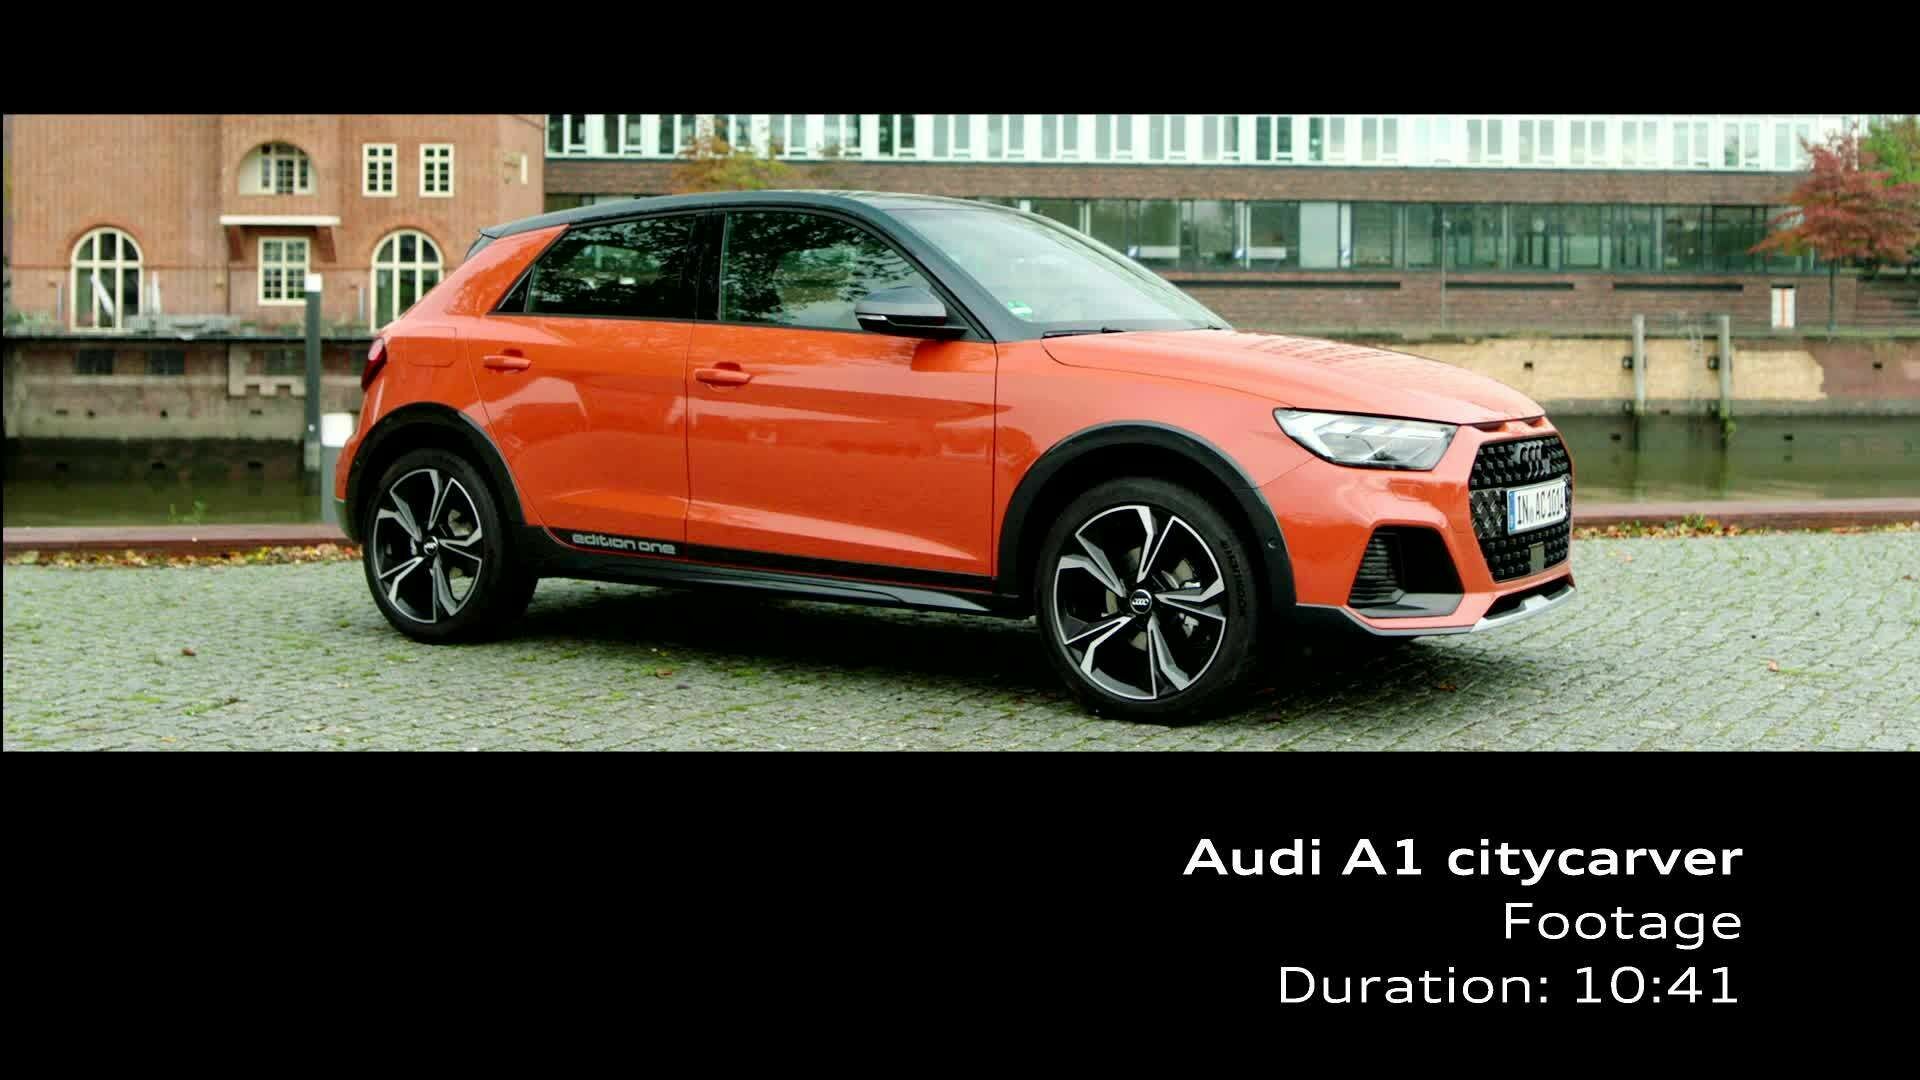 Audi A1 citycarver (Footage) orange